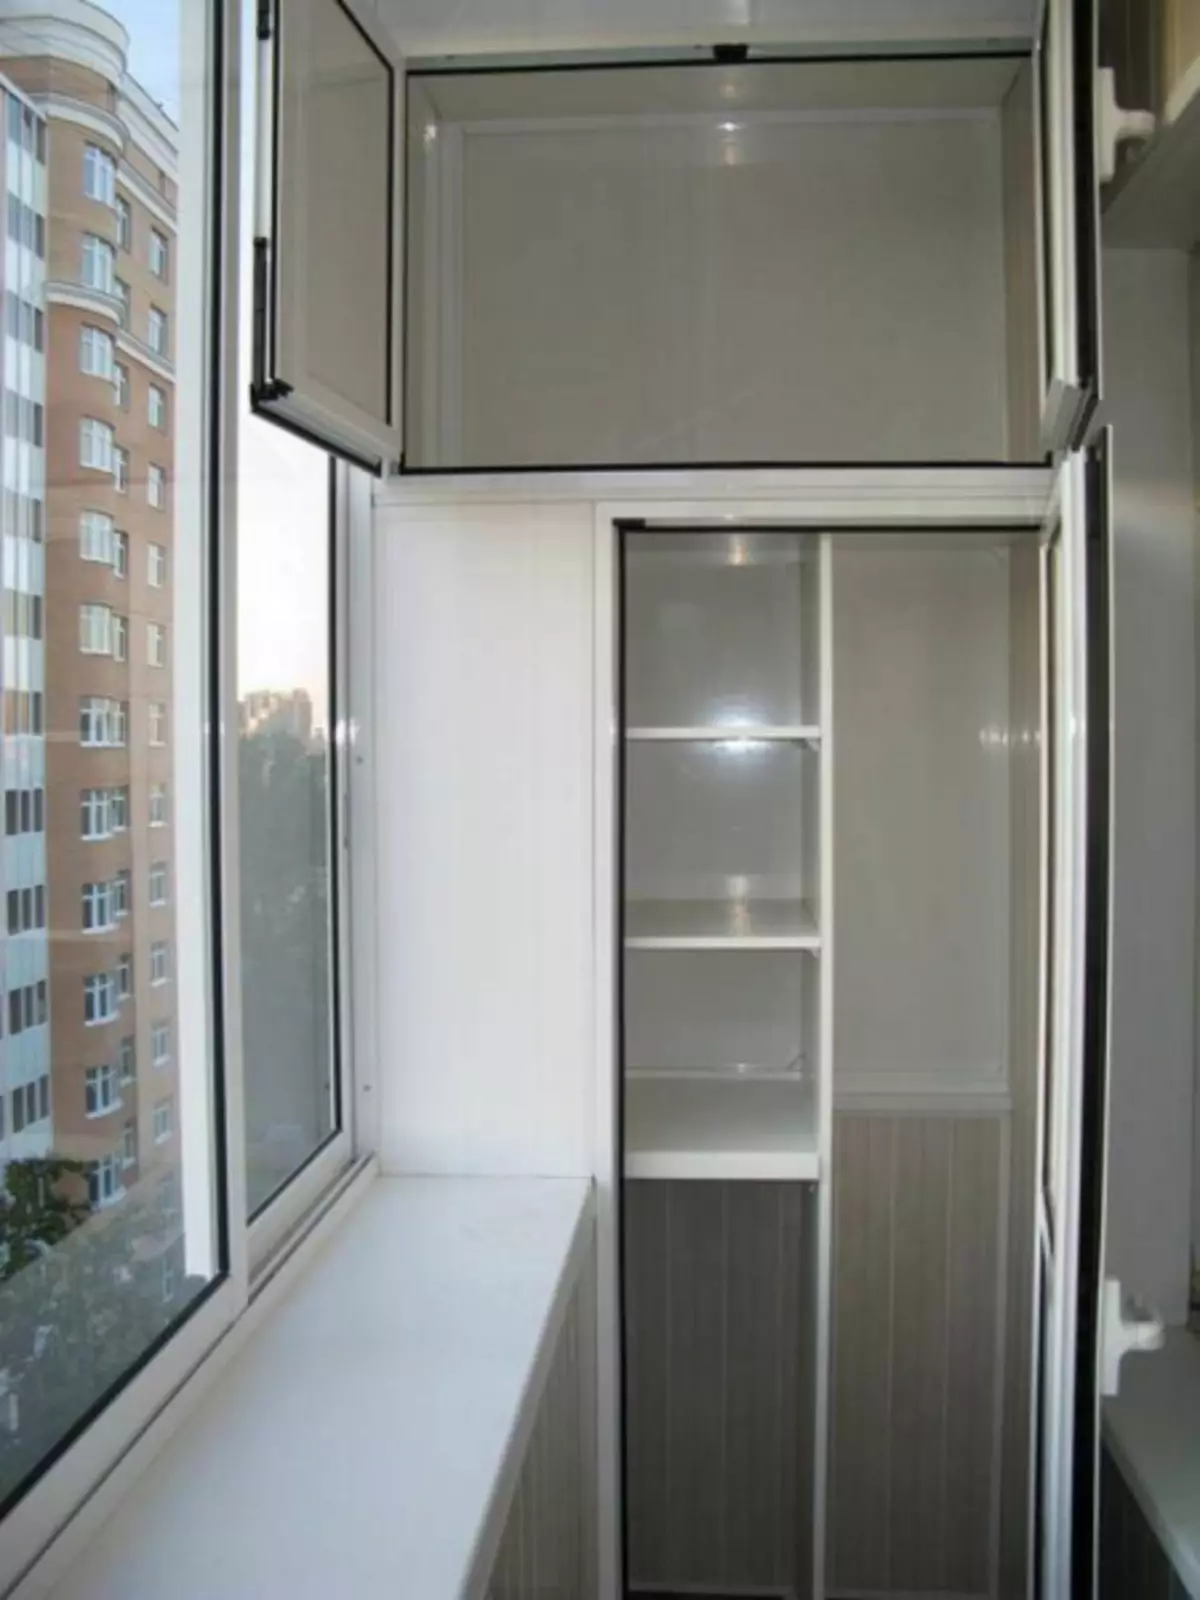 Gabinetes de balcón incorporados: ergonomía y funcional.